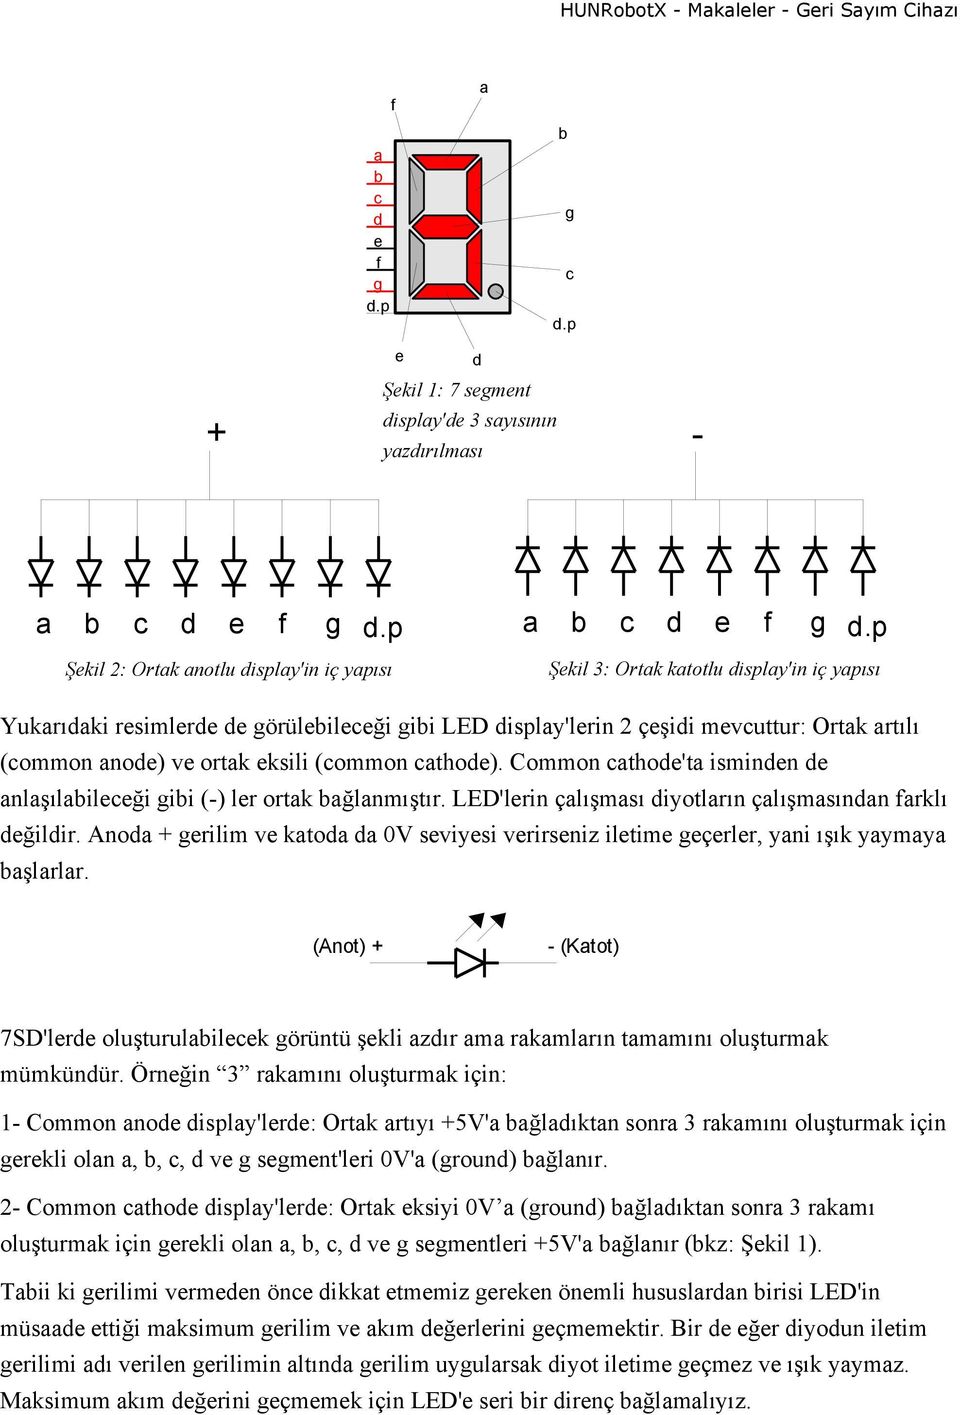 Common cathode'ta isminden de anlaşılabileceği gibi (-) ler ortak bağlanmıştır. LED'lerin çalışması diyotların çalışmasından farklı değildir.